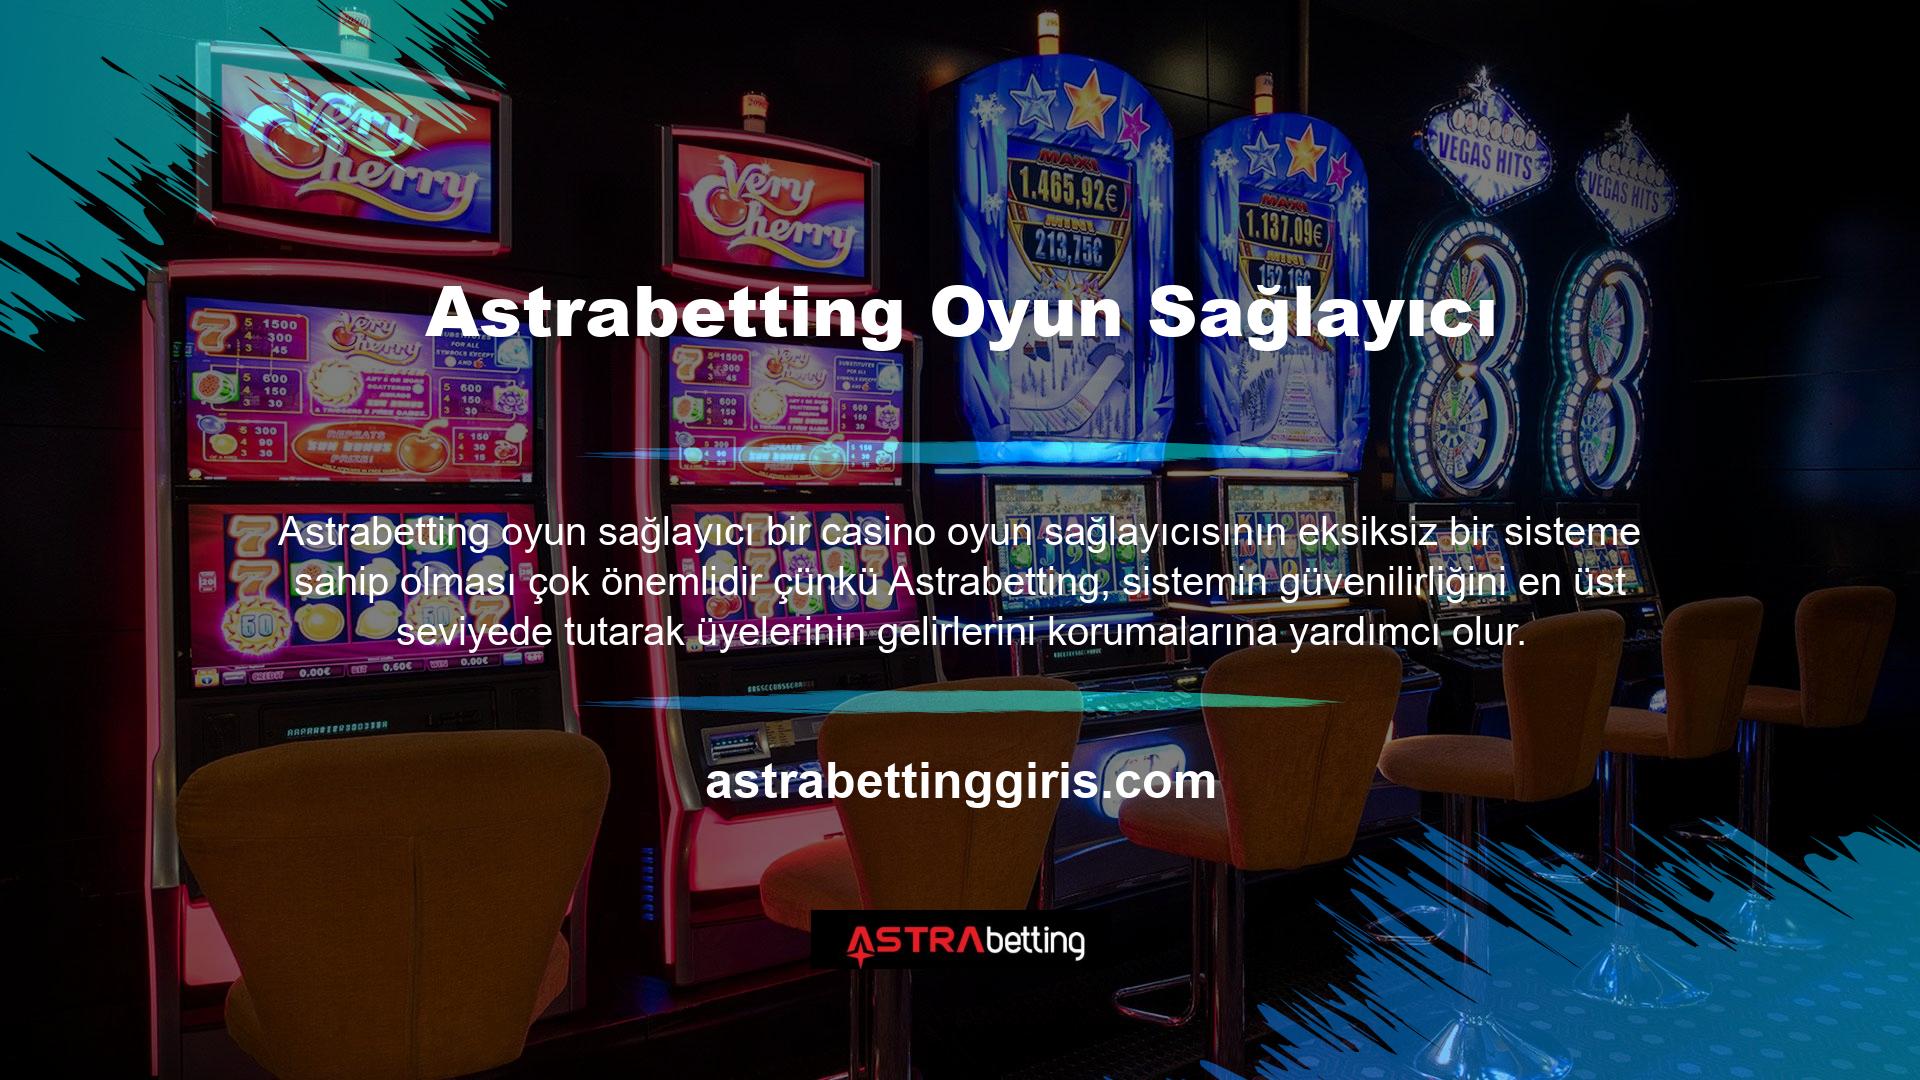 BTK, sportoto lisansı olmayan casino sitelerini Türkiye’de yasadışı kabul ediyor